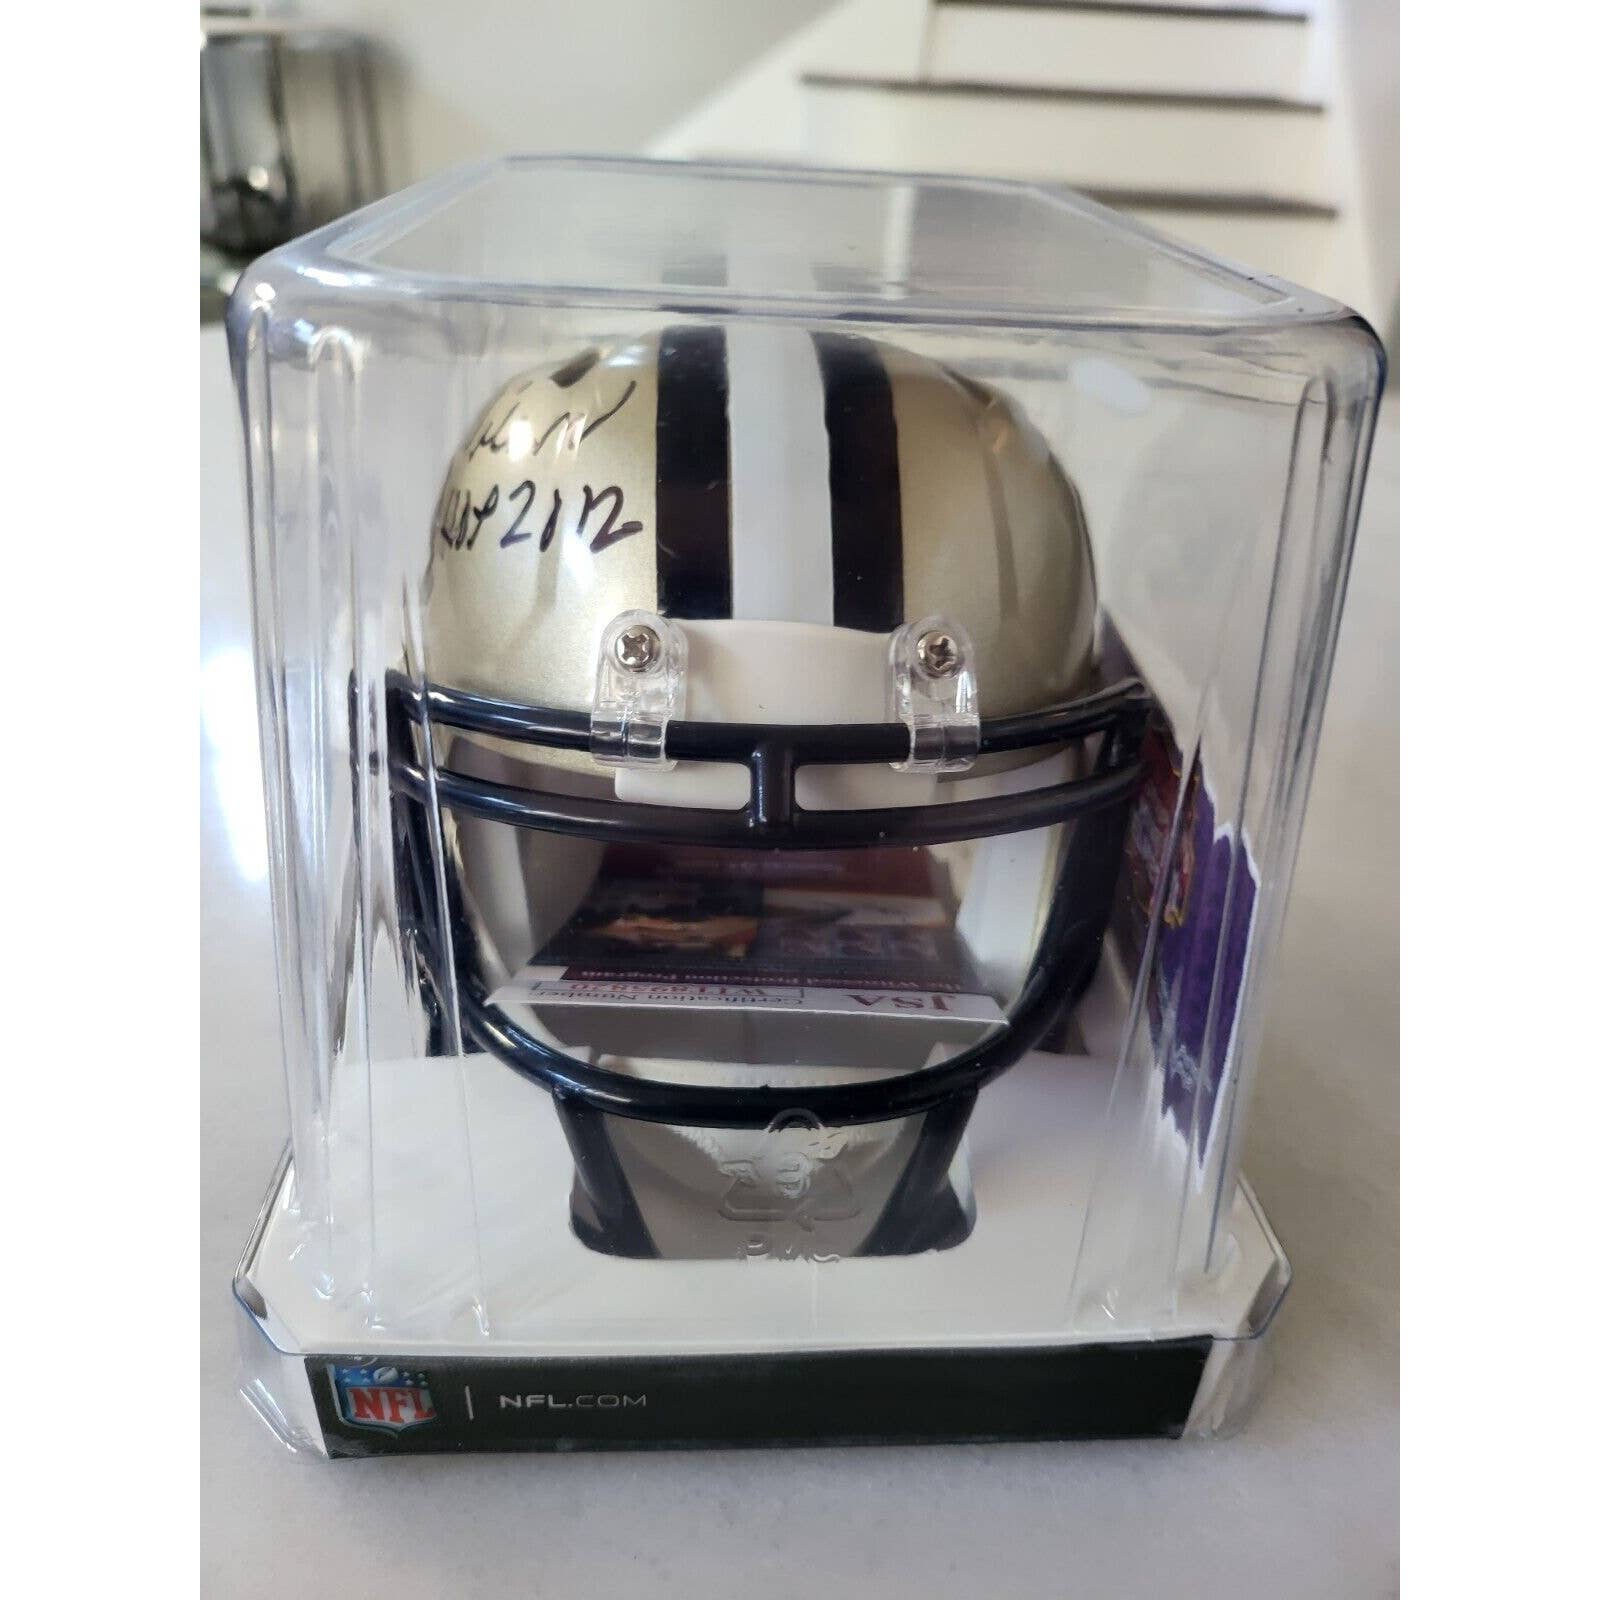 Willie Roaf Autographed/Signed Mini Helmet JSA New Orleans Saints HOF - TreasuresEvolved